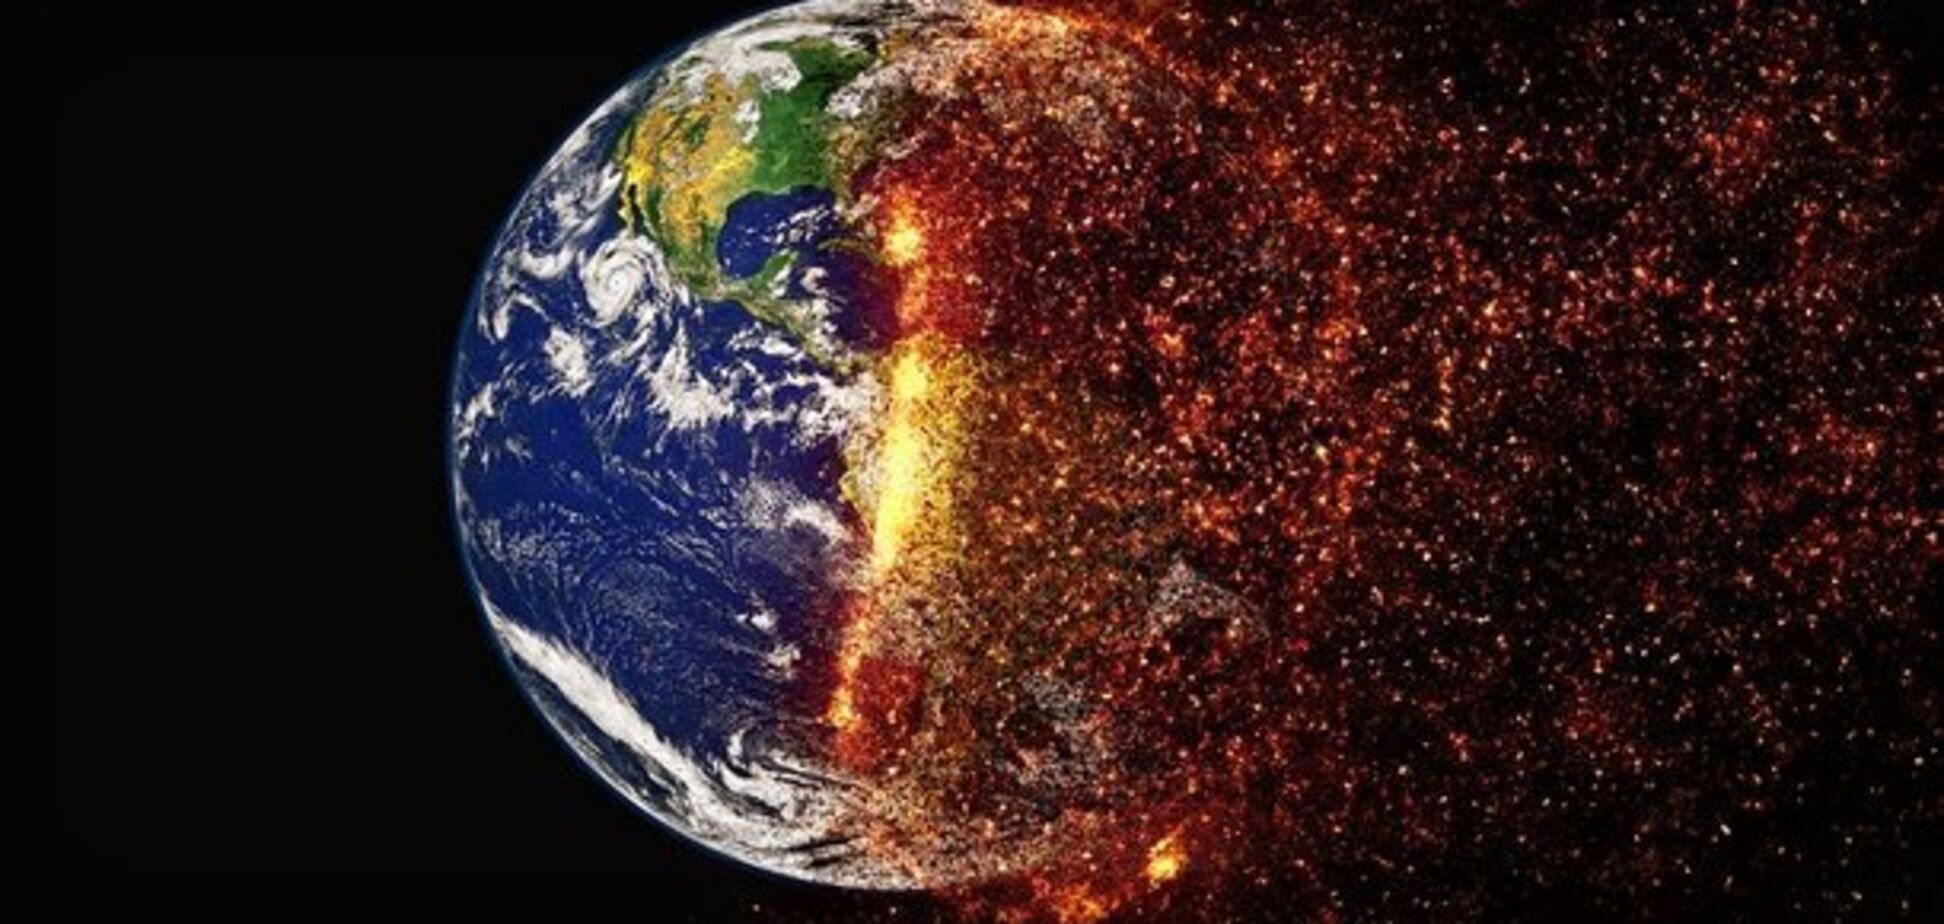  На Землю надвигается огненная катастрофа: как предотвратить